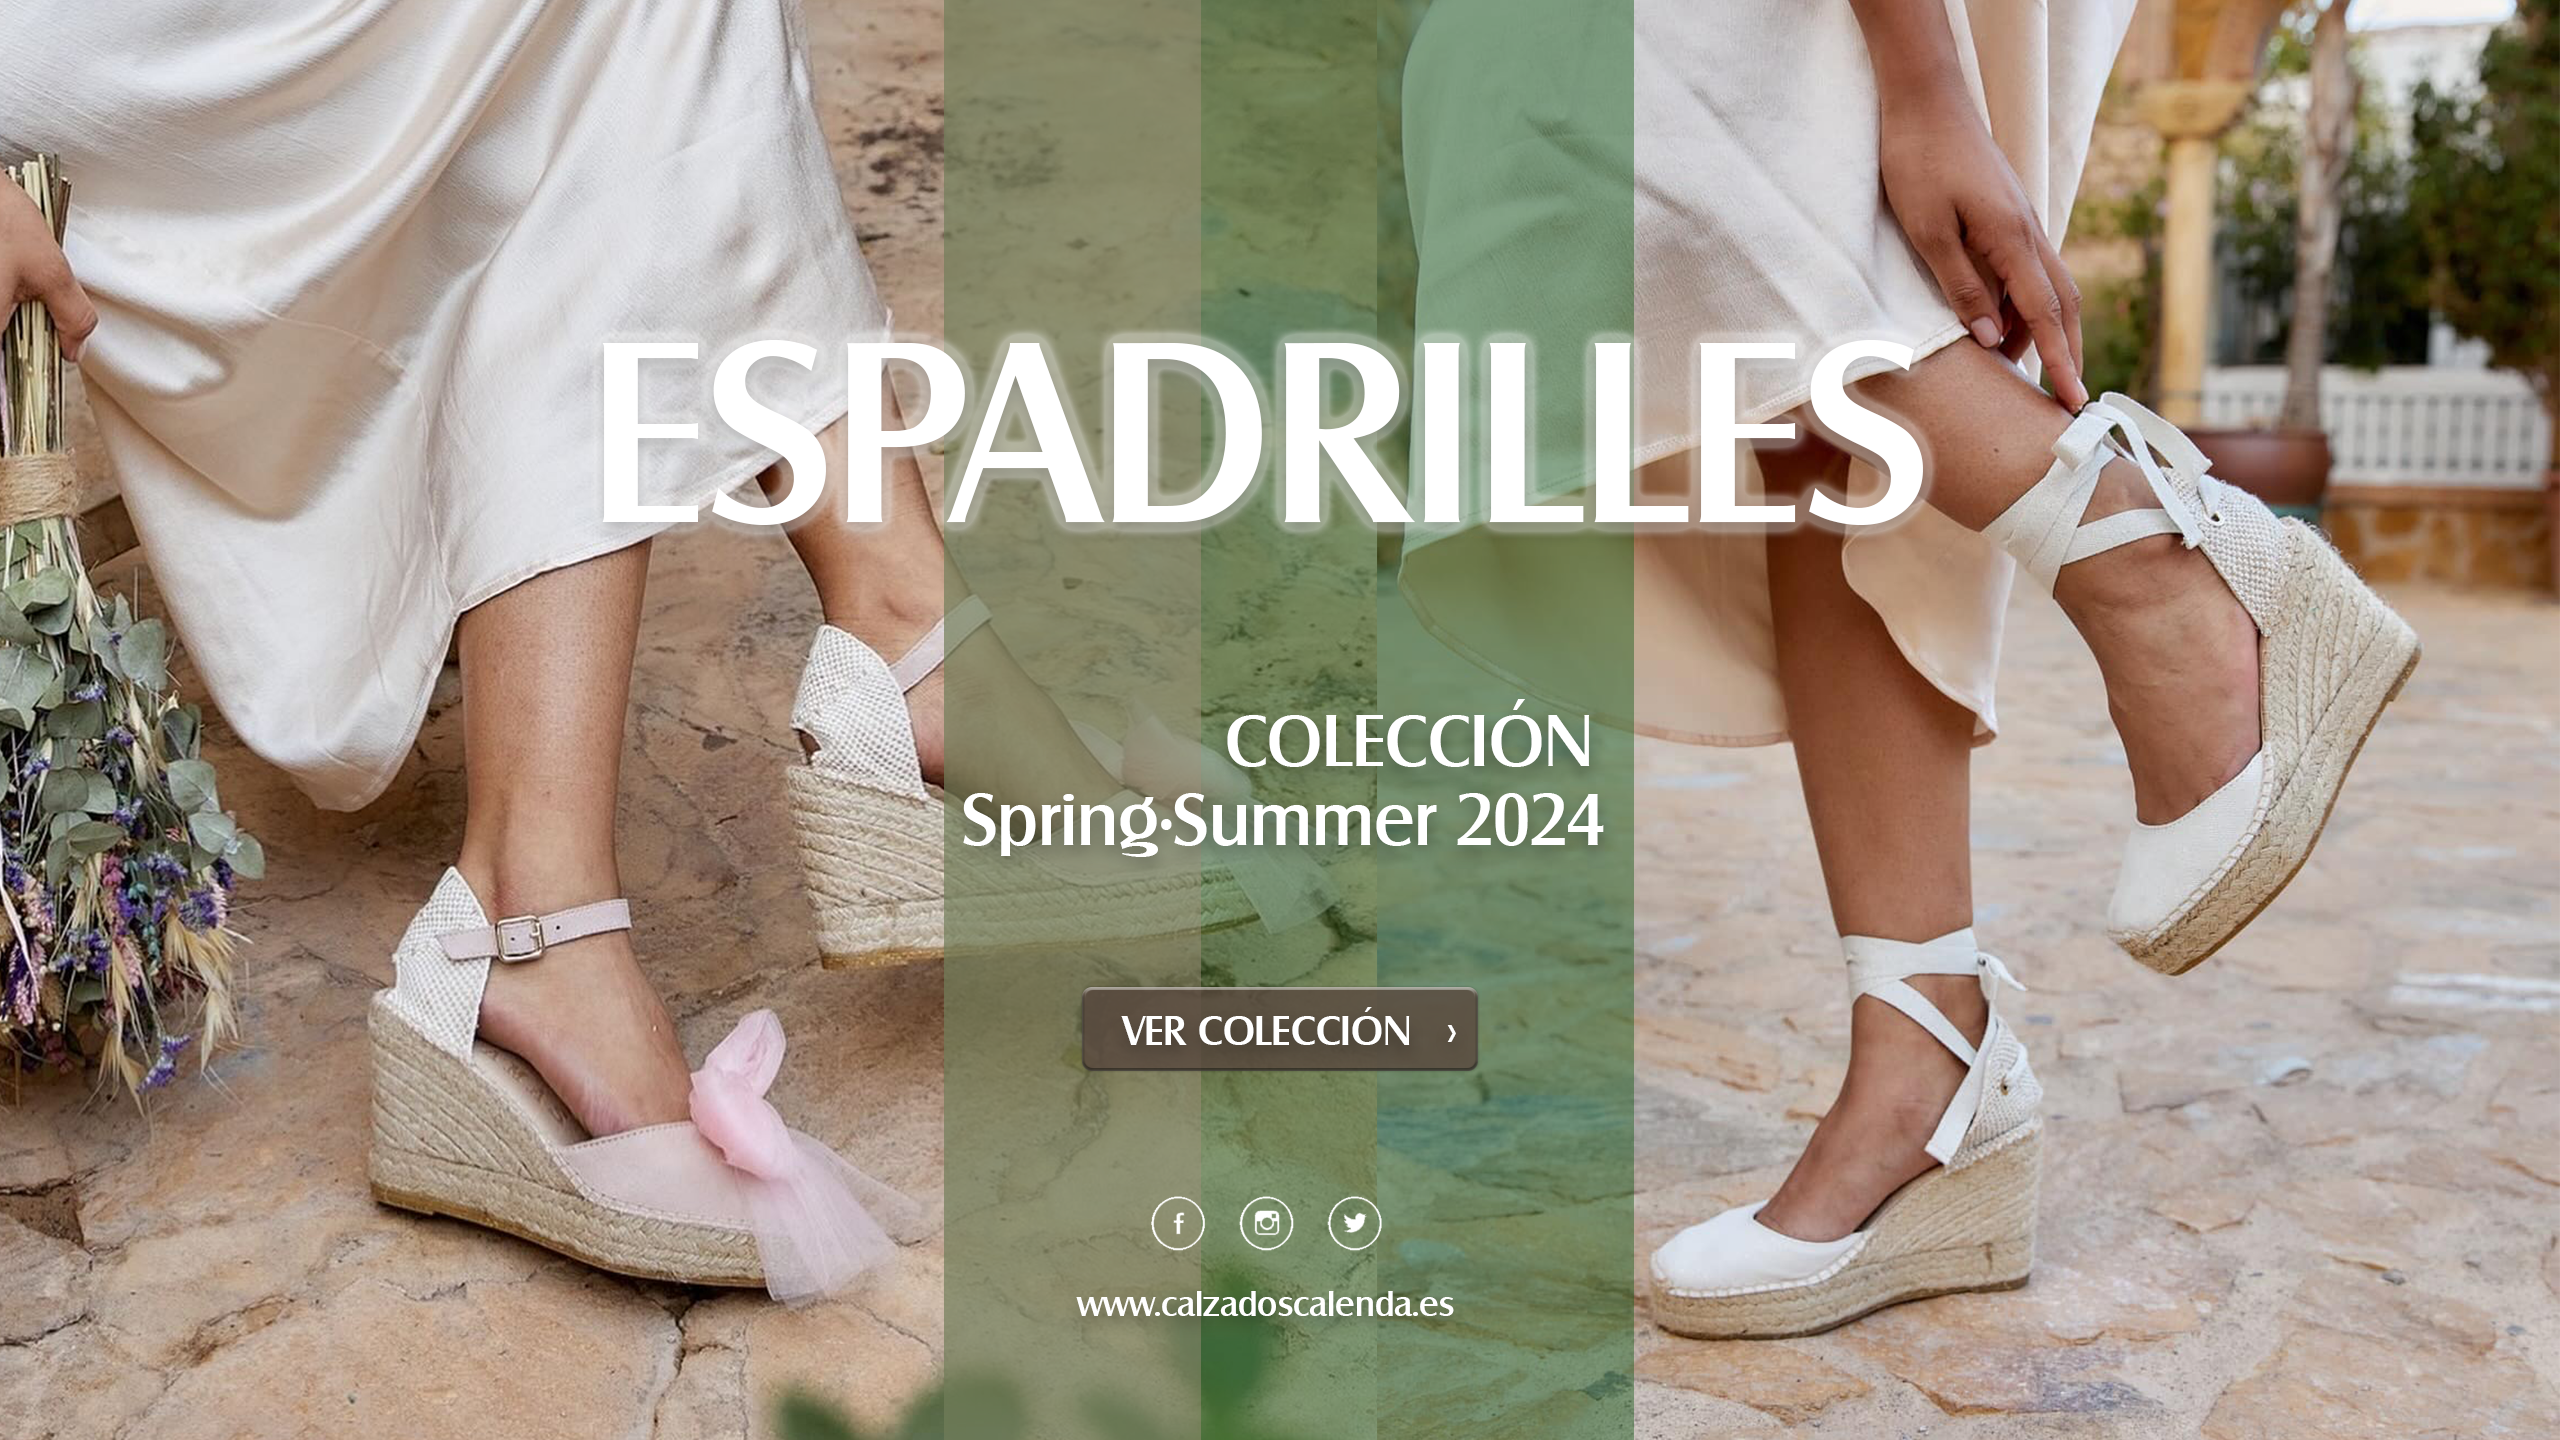 ESPADRILLES - COLECCIÓN Spring·Summer 2024